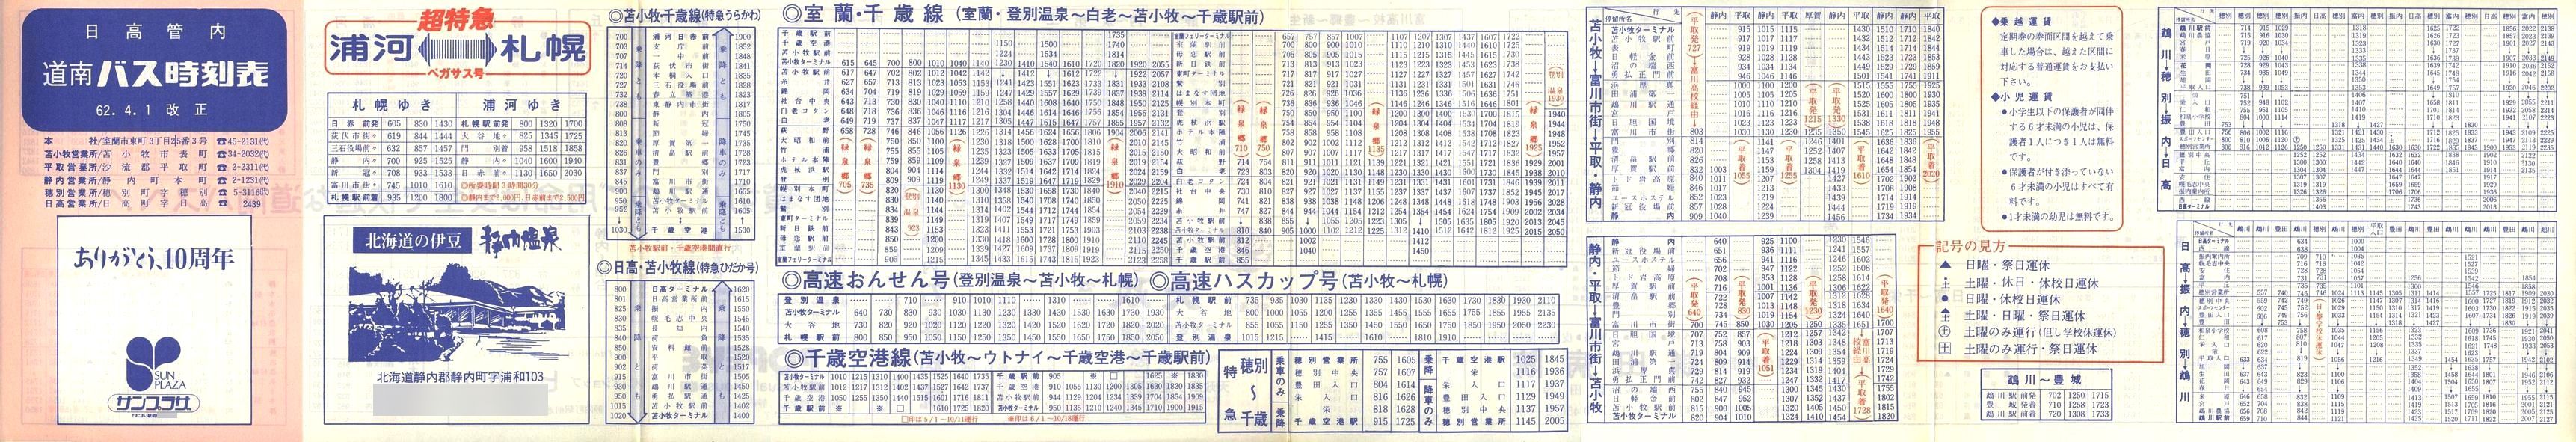 1987-04-01改正_道南バス_日高管内時刻表表面